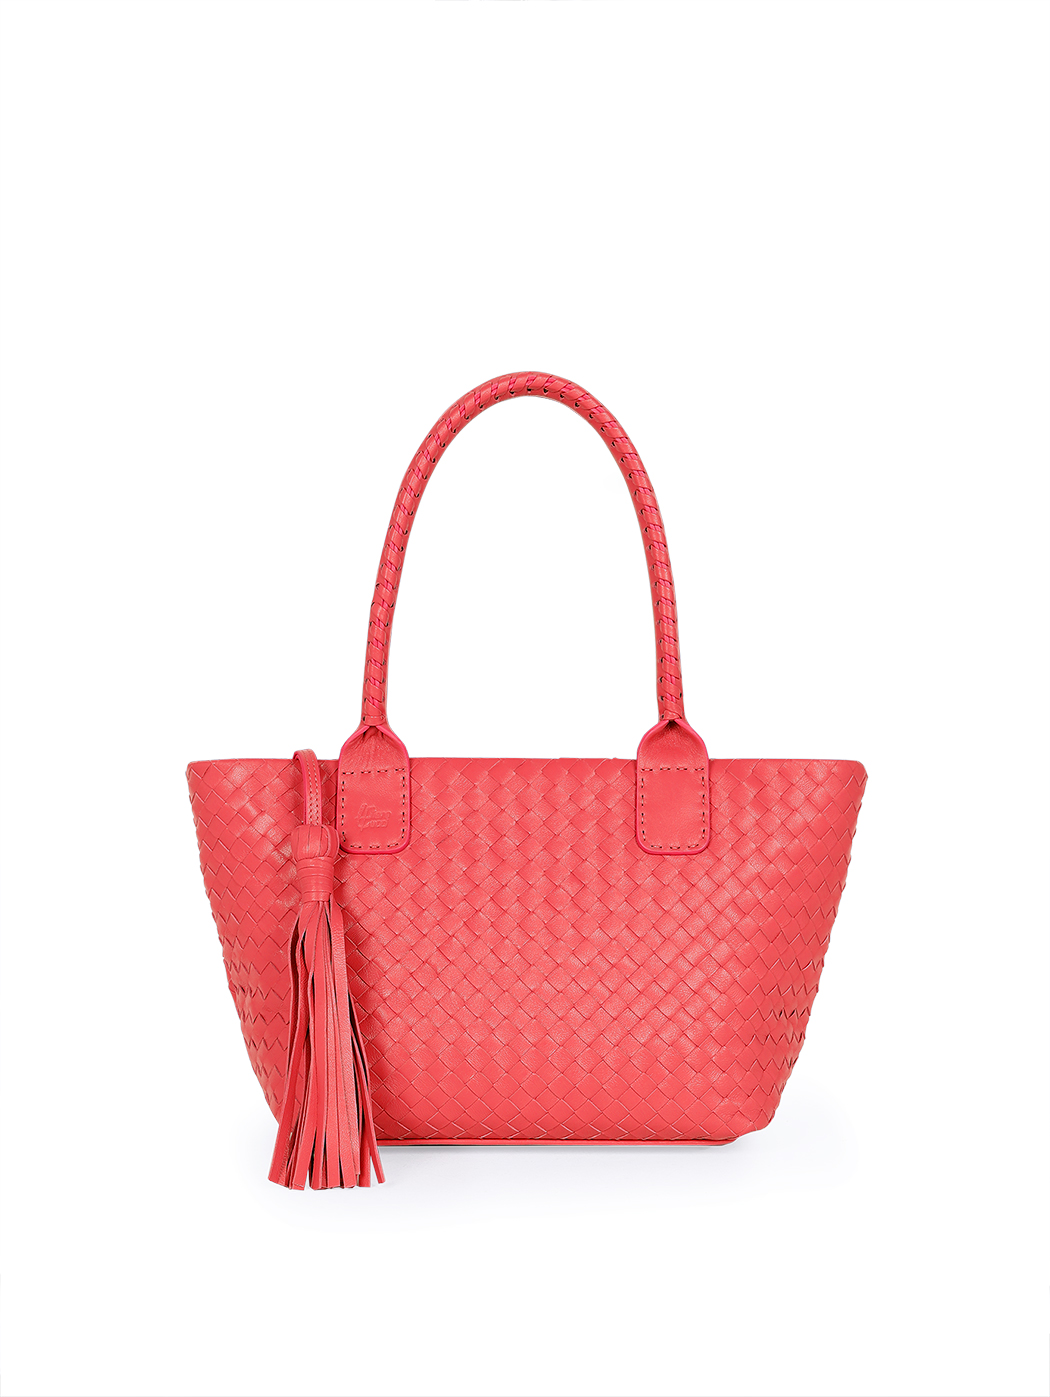 Кожаная плетеная сумка – тоут коллекции Intrecci красного цвета